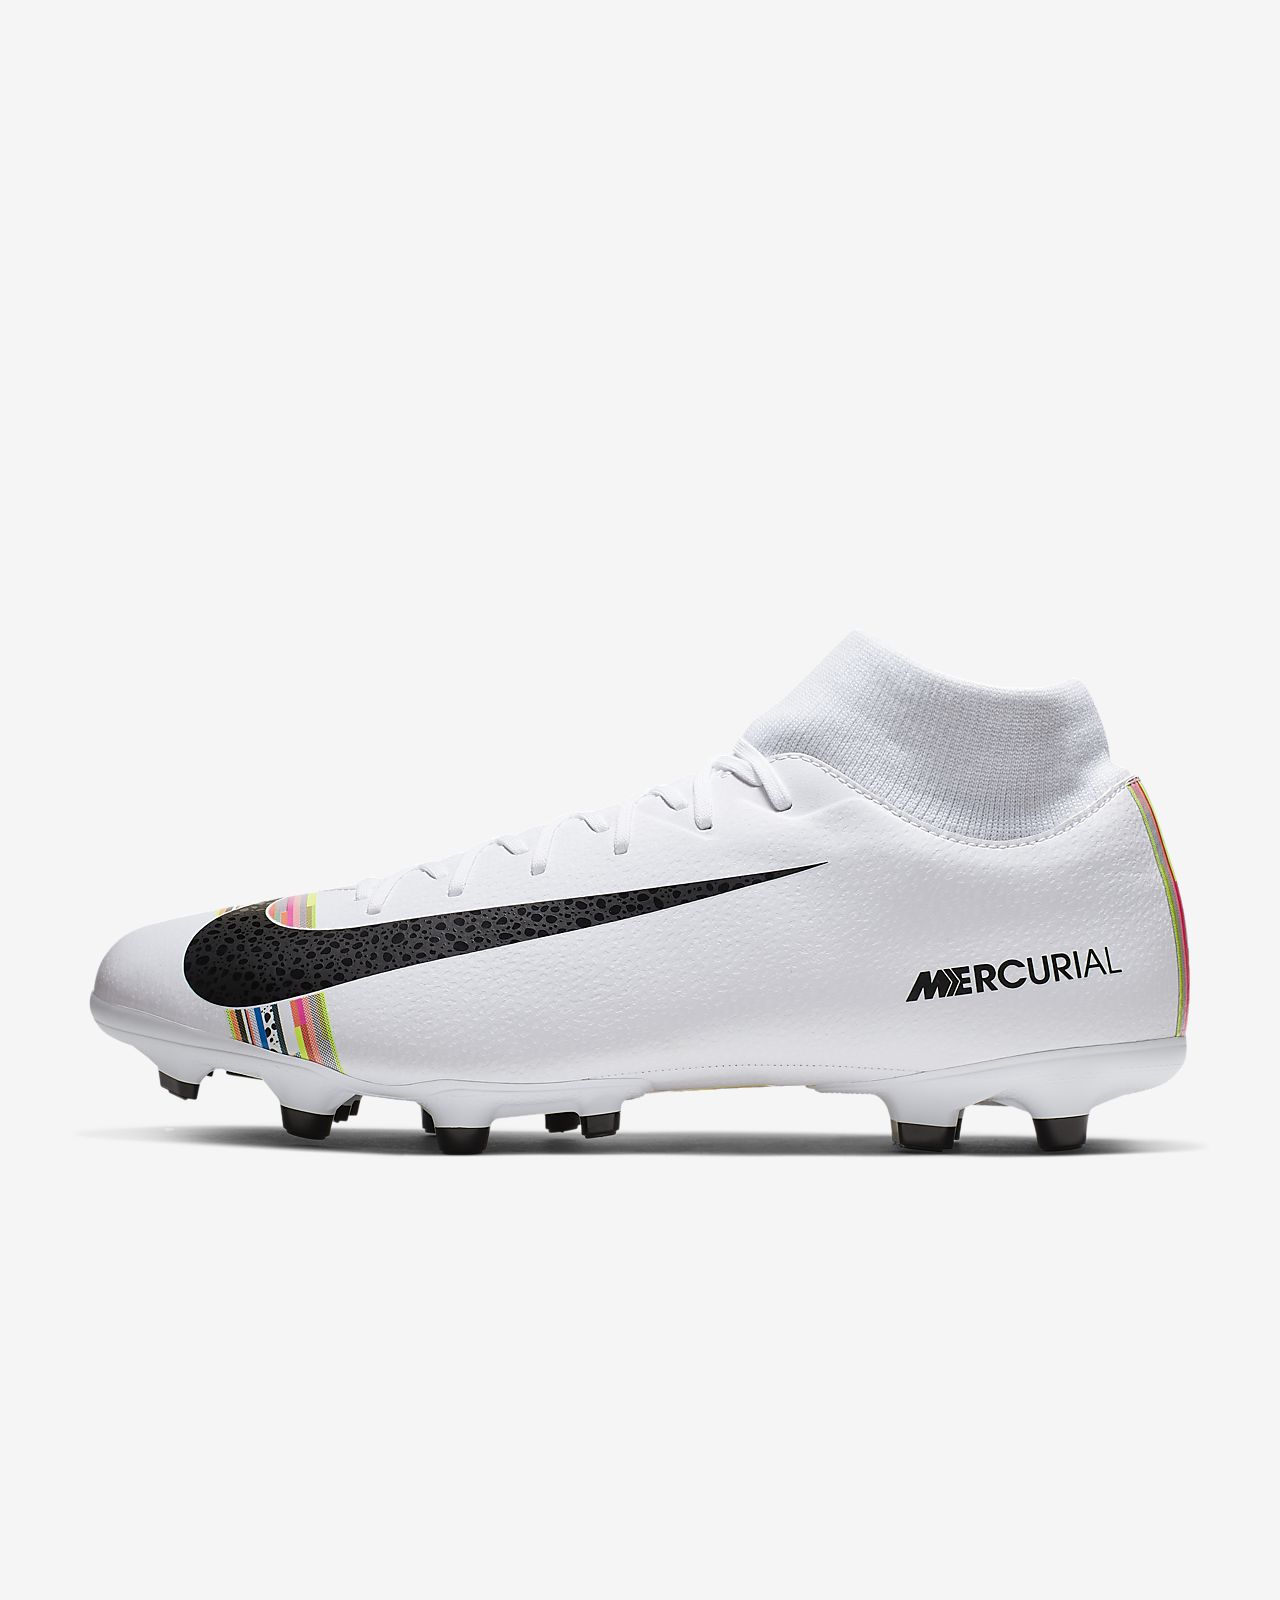 Nike Mercurial Vapor 12 Elite FG Soccer Cleats DICK'S Sporting Goods